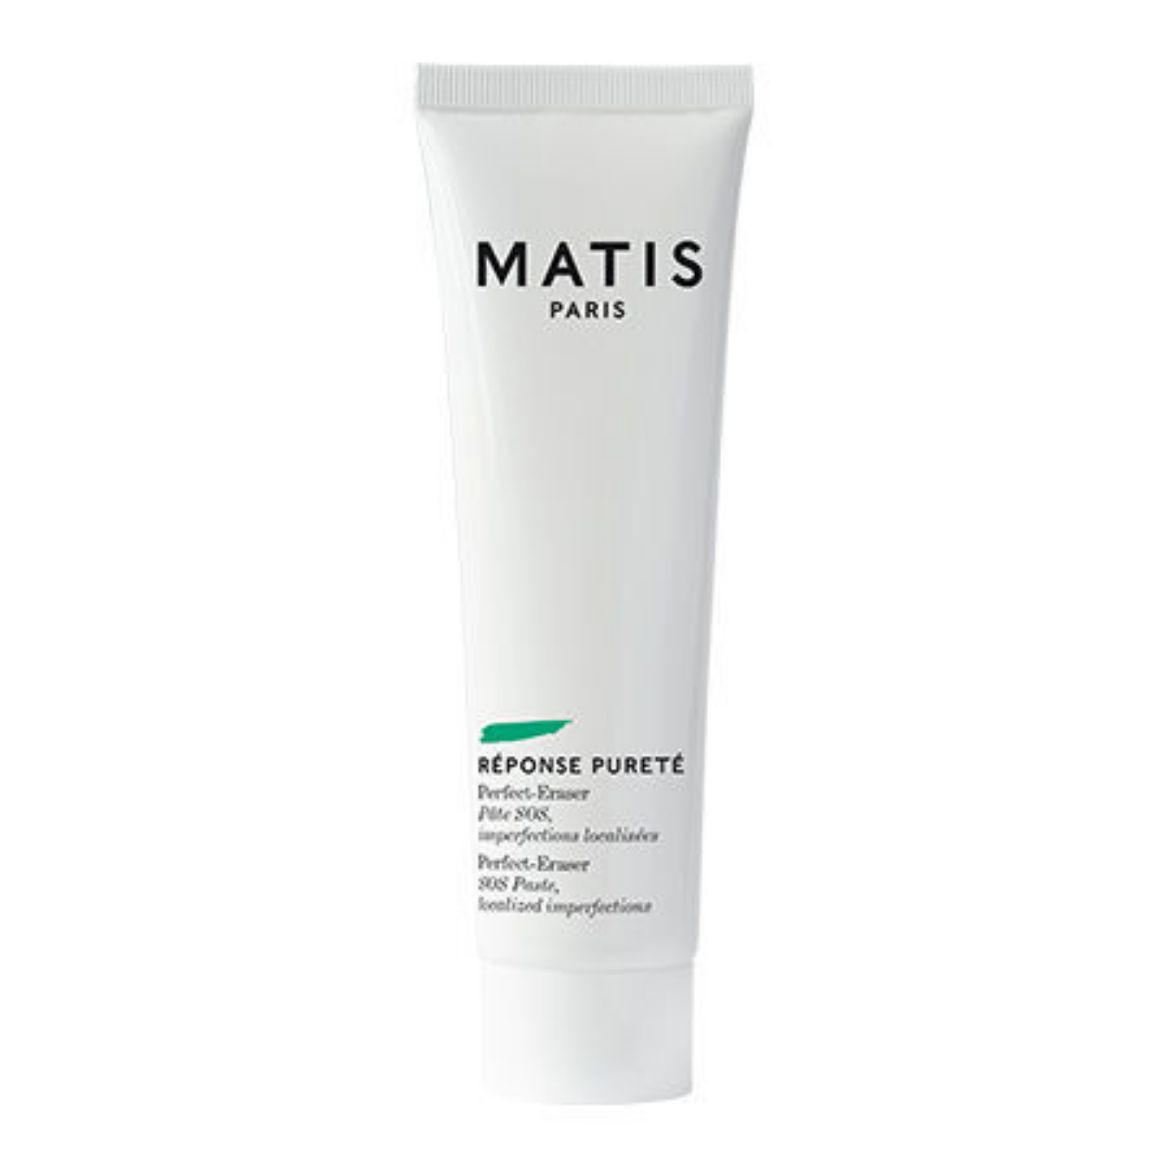 Image of Matis Perfect-Eraser (20ml)